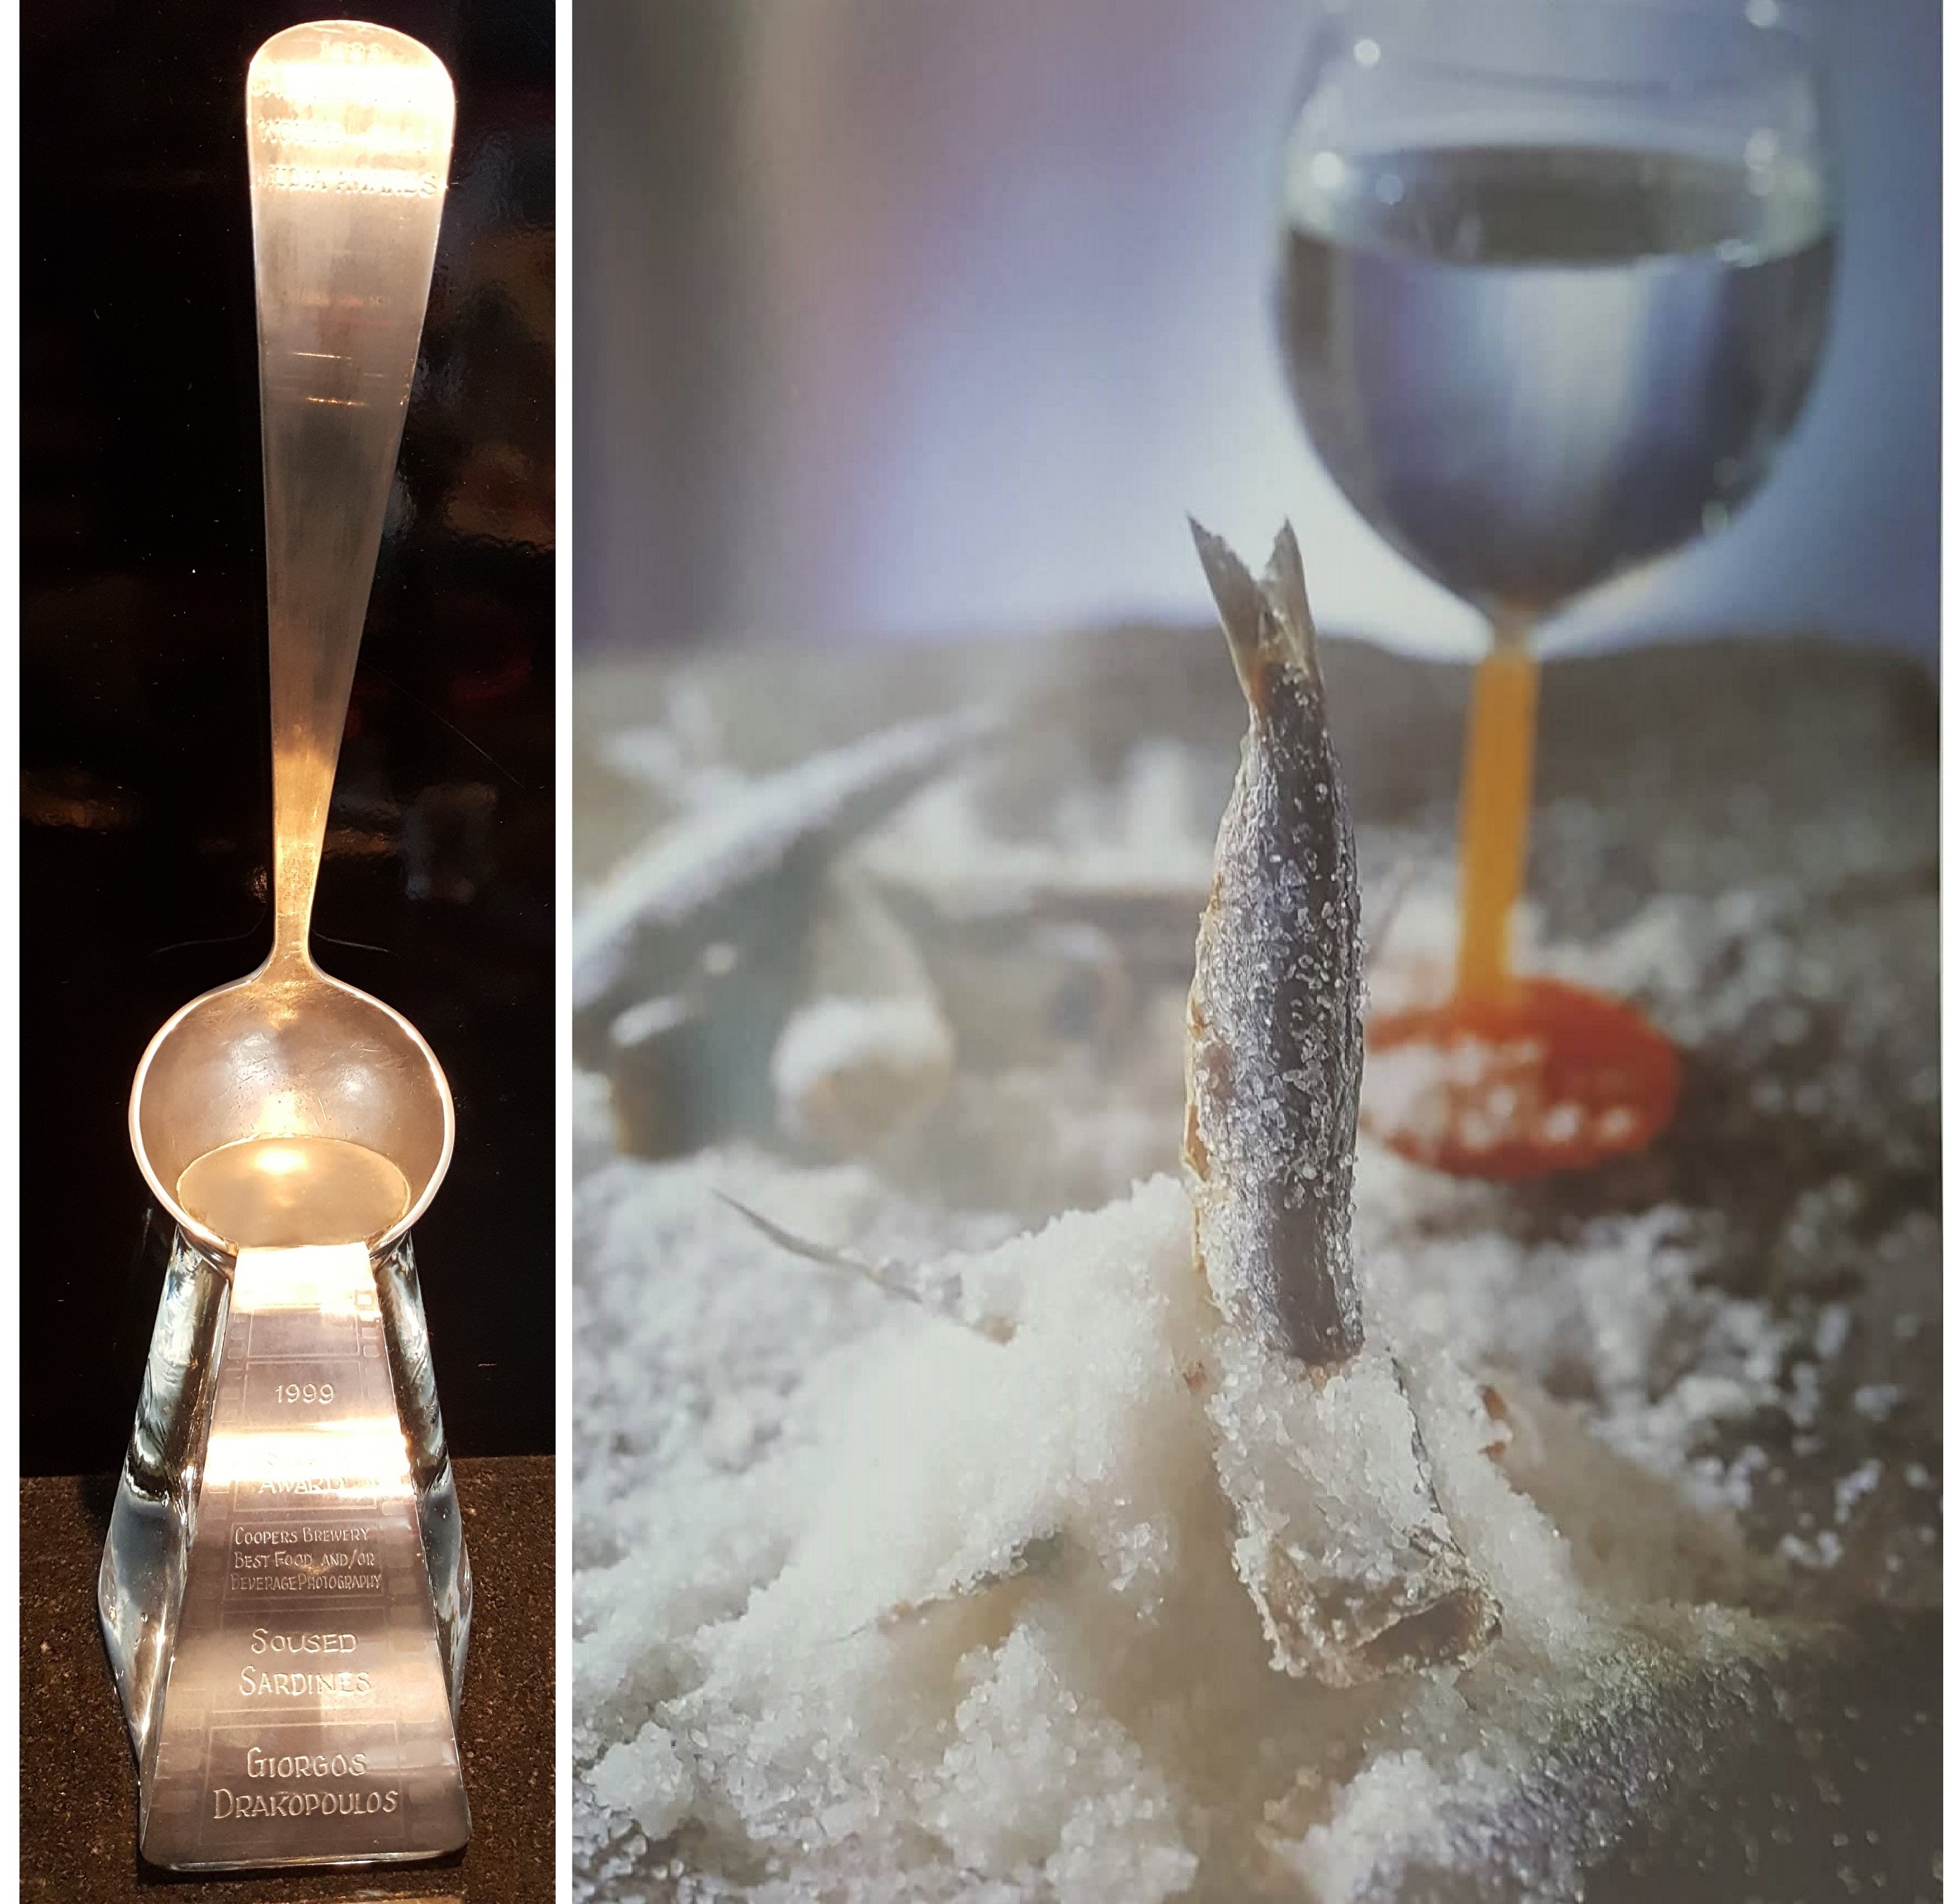 ΒΕΦΑ ΑΛΕΞΙΑΔΟΥ Tasting Australia Silver Ladle Award Salted sardine vefaalexiadou cookbooks & blog vefaalexiadou.gr/